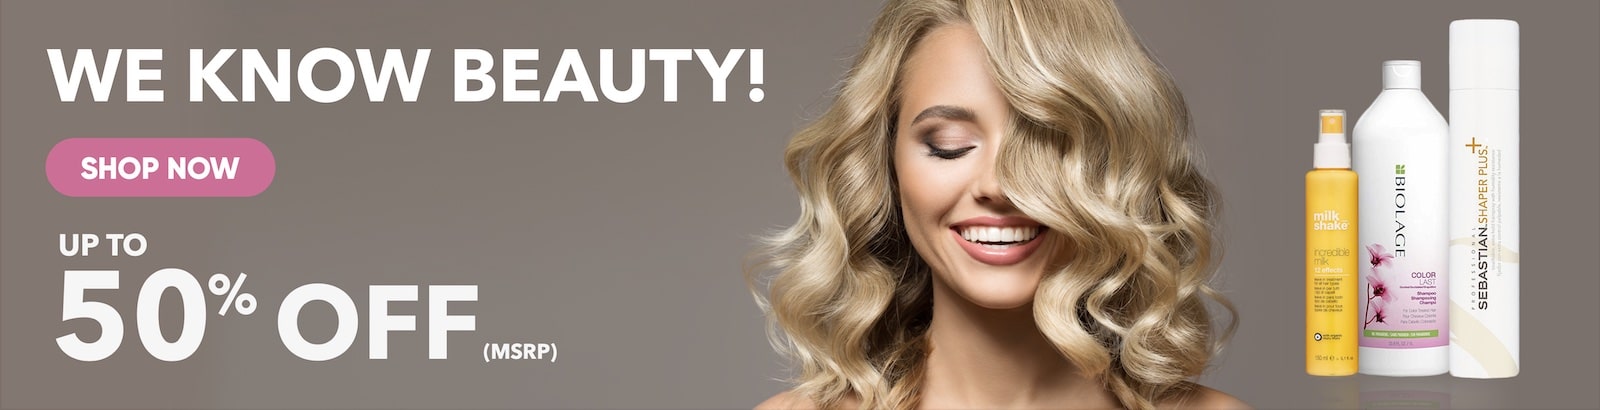 Pro Hair Care & Beauty Supplies Online | Beauty Plus Salon